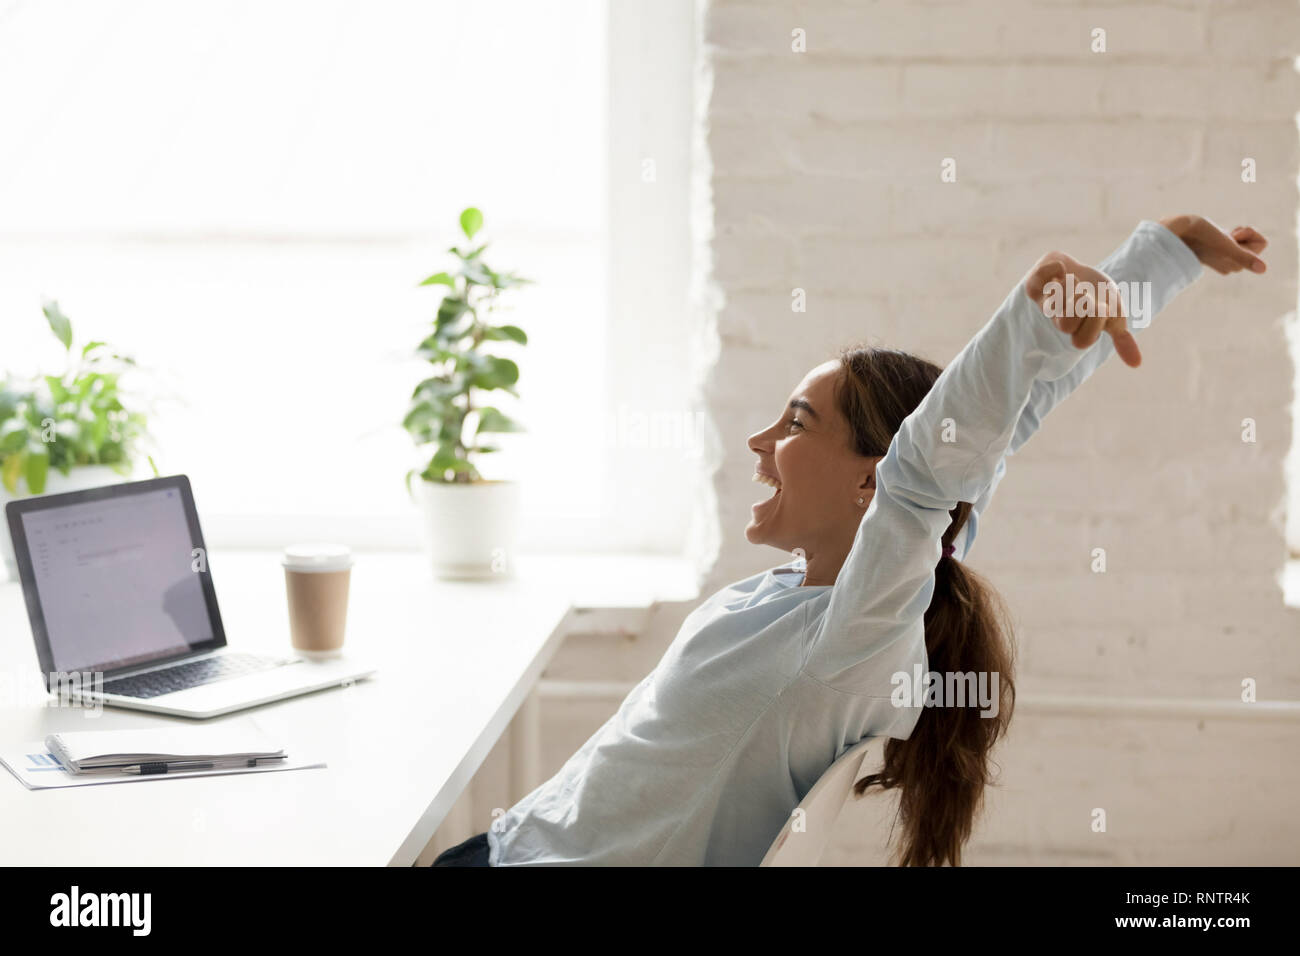 Allegra donna stretching sollevando in alto le mani seduti al posto di lavoro Foto Stock